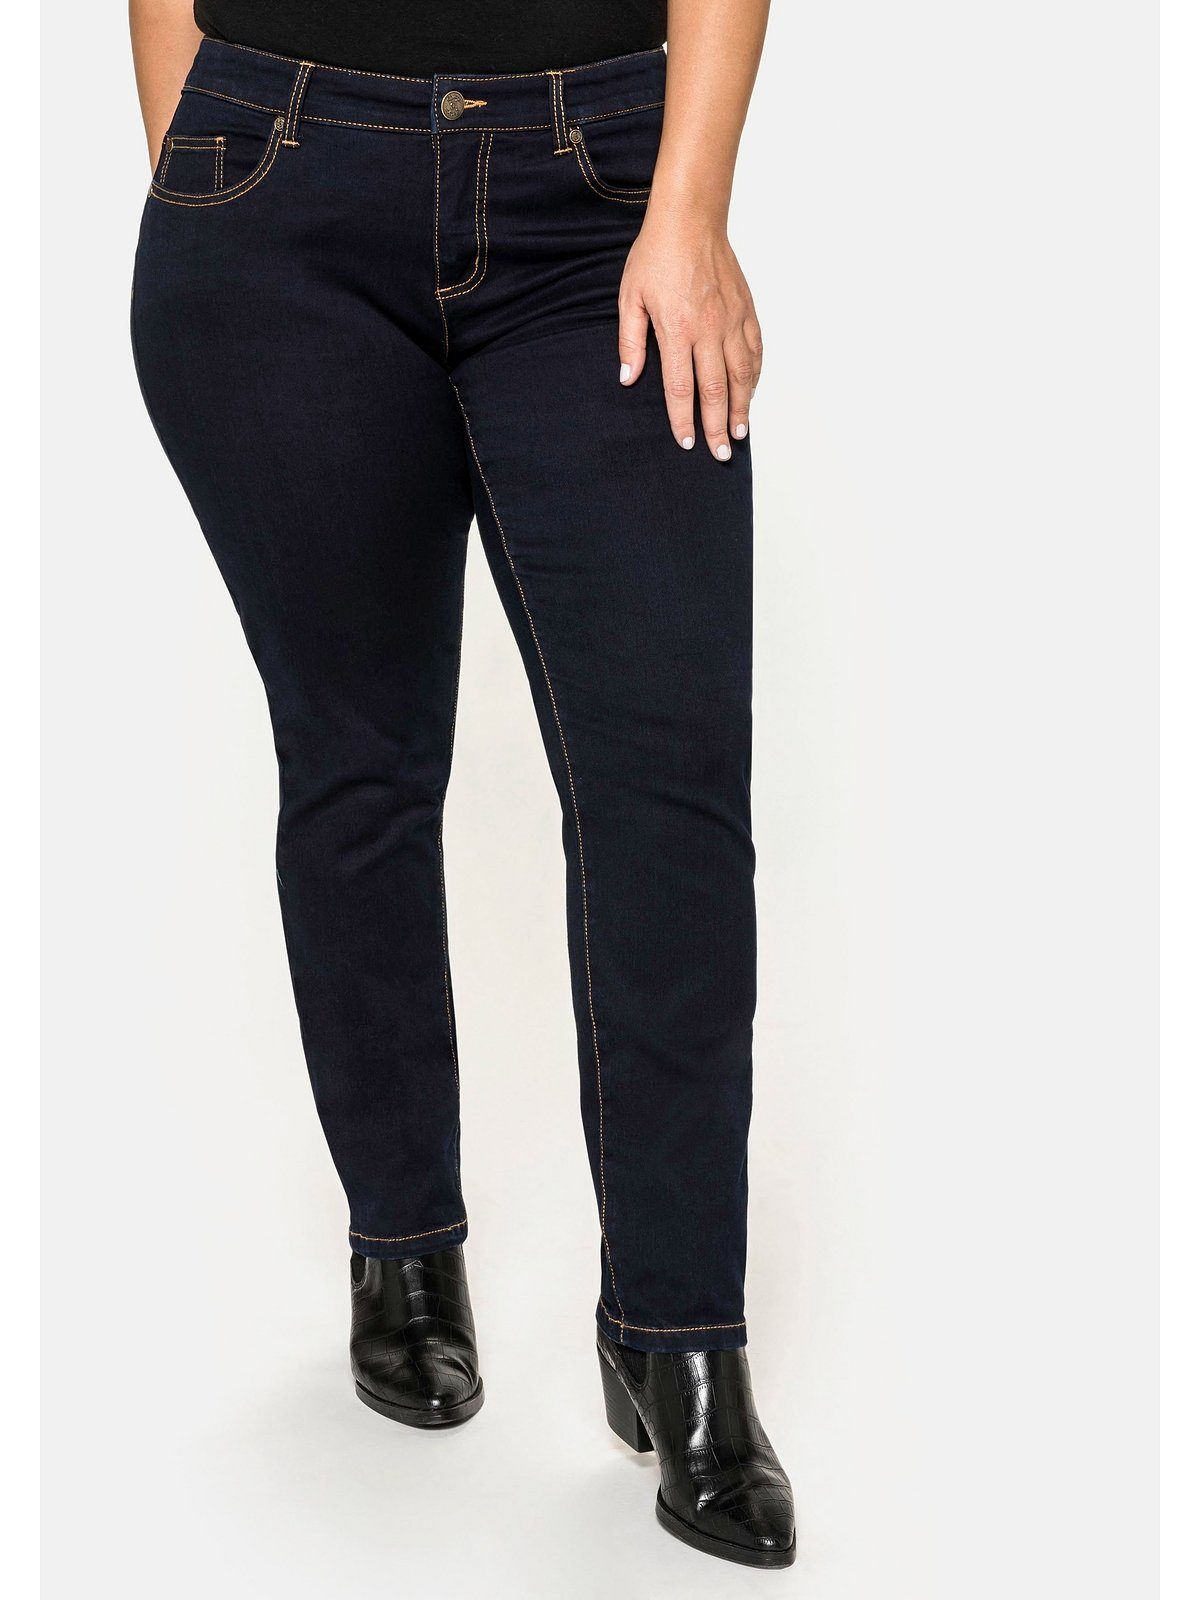 Sheego im Denim 5-Pocket-Stil Stretch-Jeans Große black Größen blue